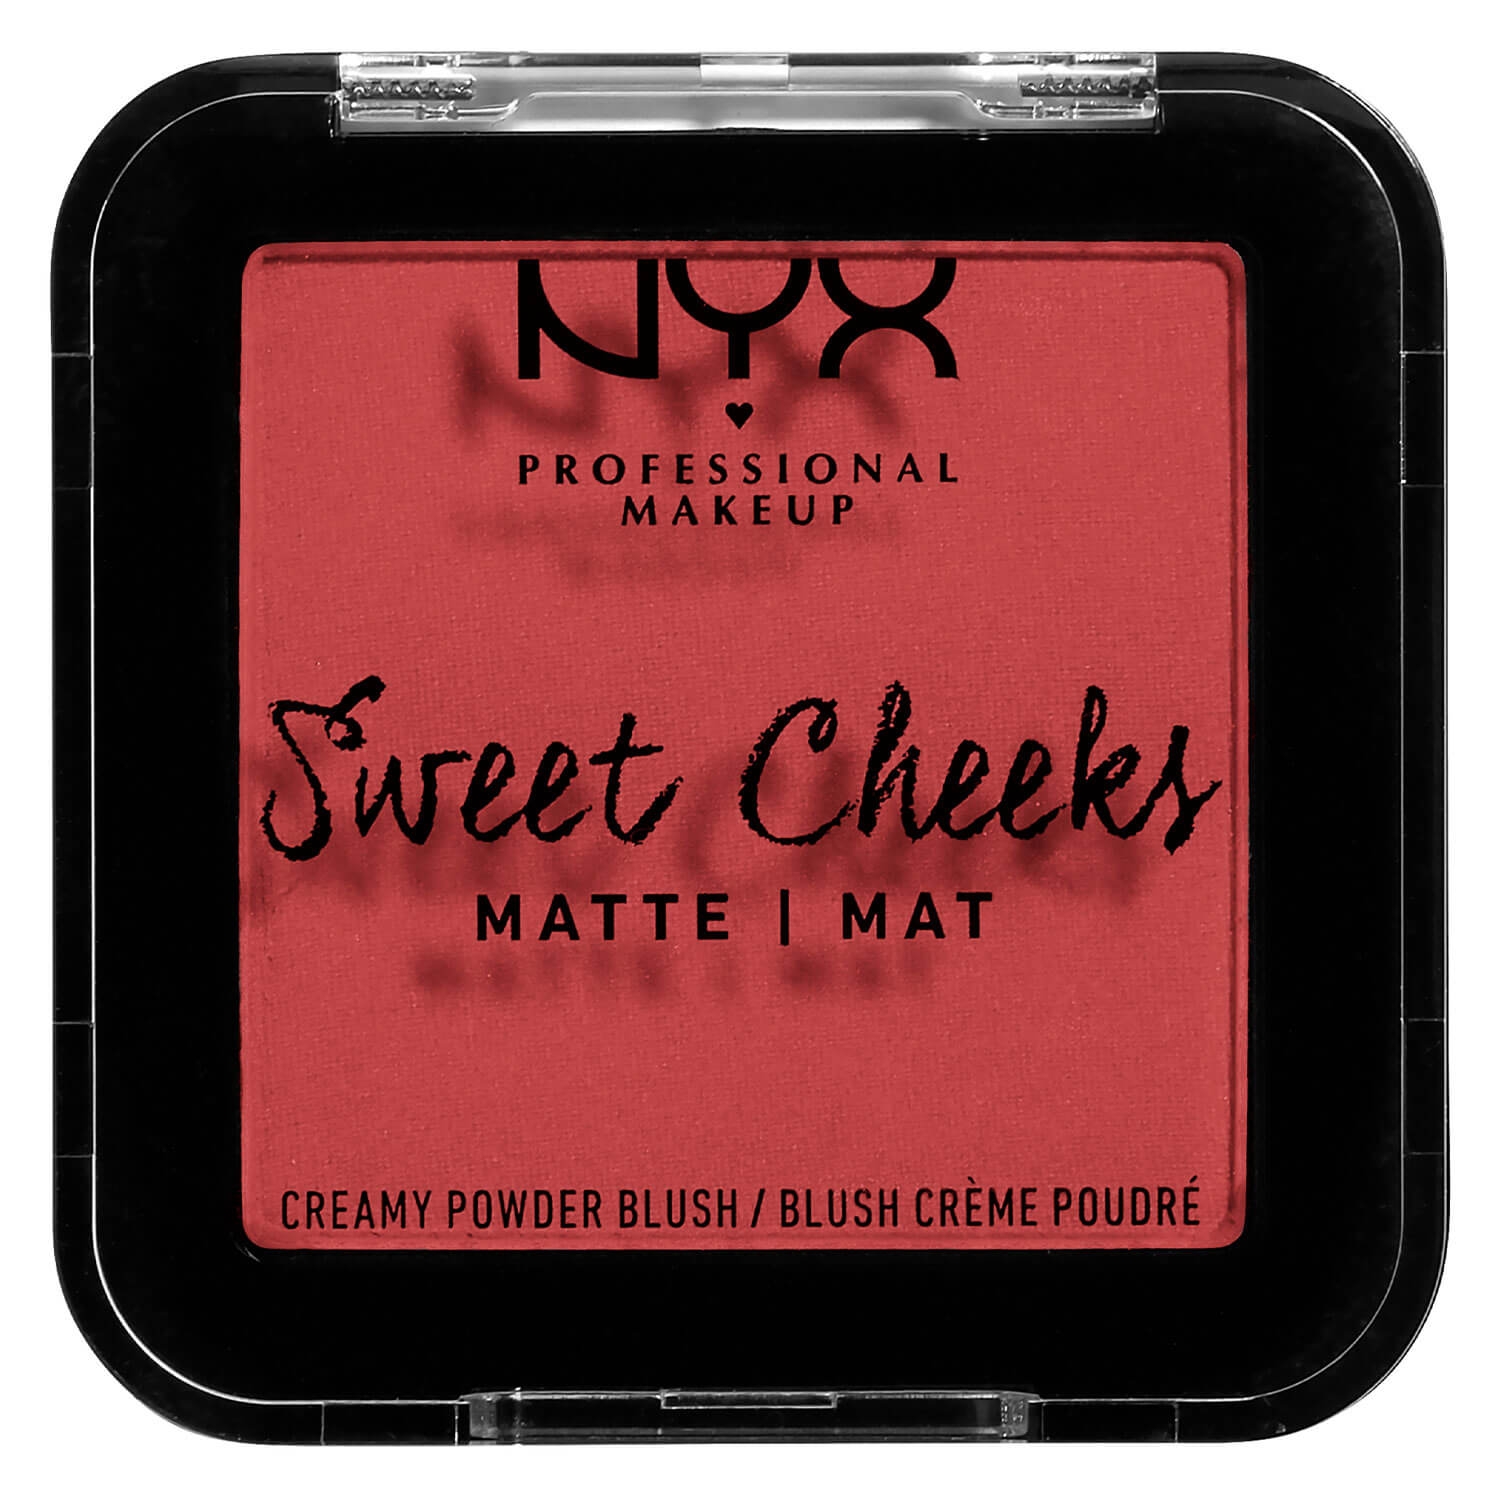 Produktbild von Sweet Cheeks - Creamy Powder Blush Matte Citrine Rose